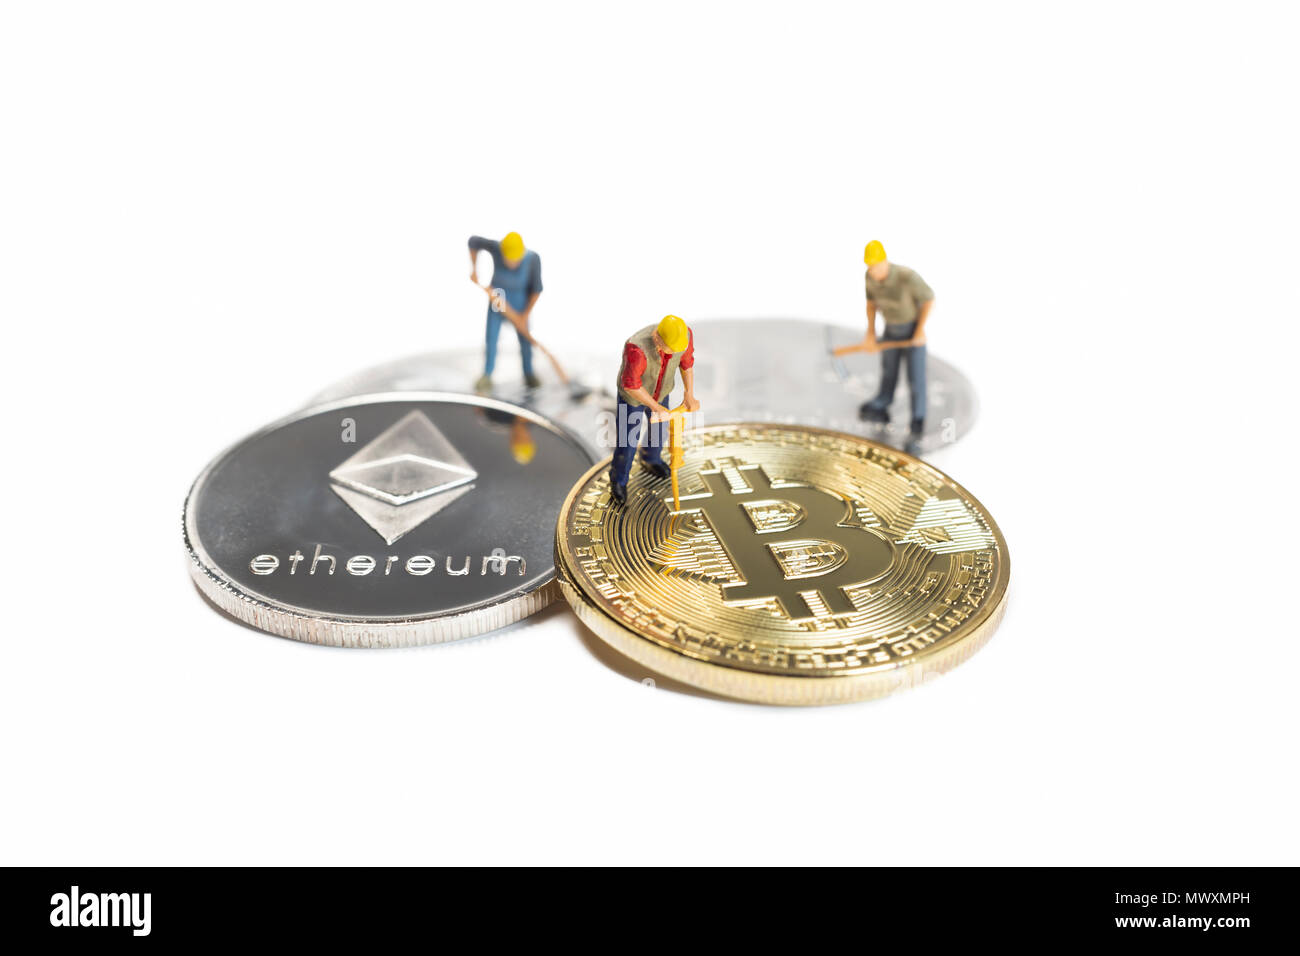 Los trabajadores mineros Cryptocurrencies miniatura diversas sobre una superficie blanca Foto de stock